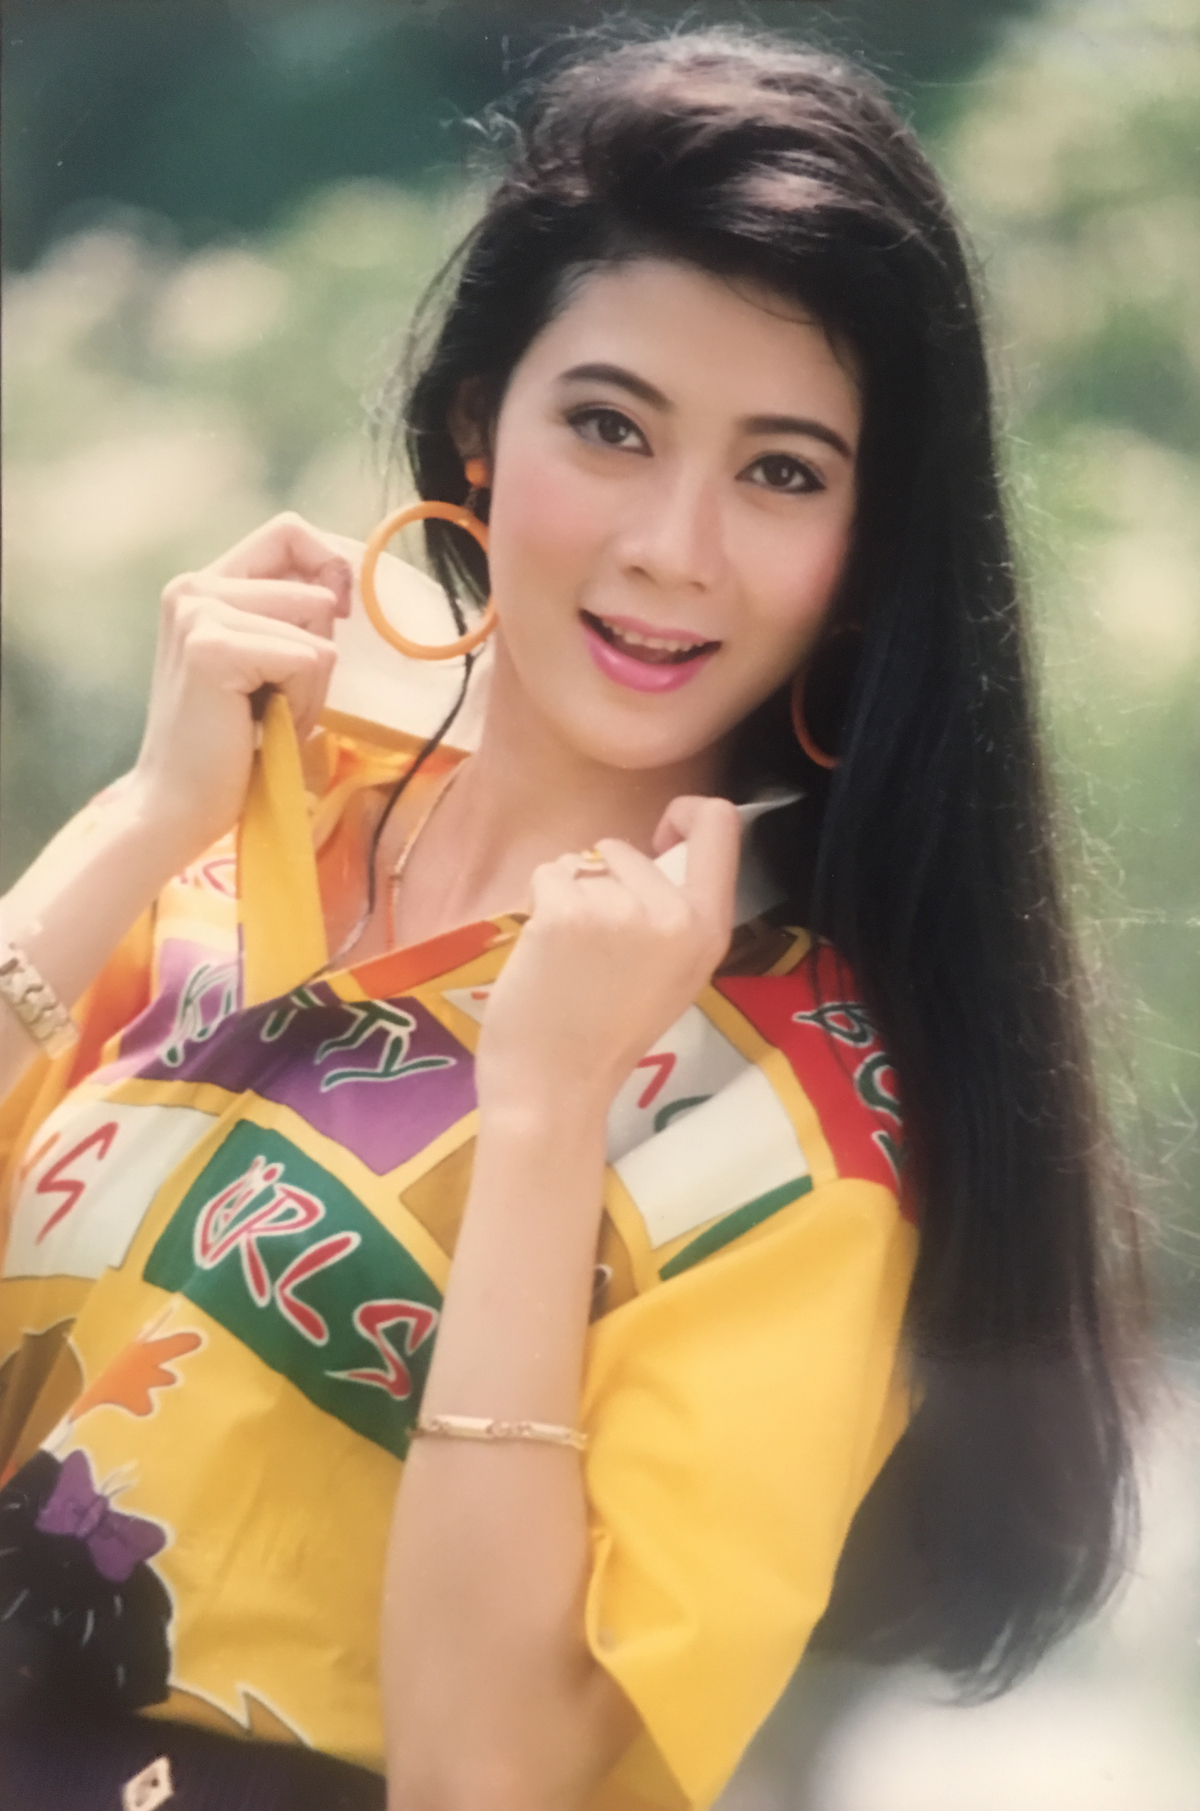 Đệ nhất mỹ nhân màn ảnh Việt thập niên 90 Diễm Hương và nỗi khổ ê chề buộc phải rút lui khỏi làng giải trí 2